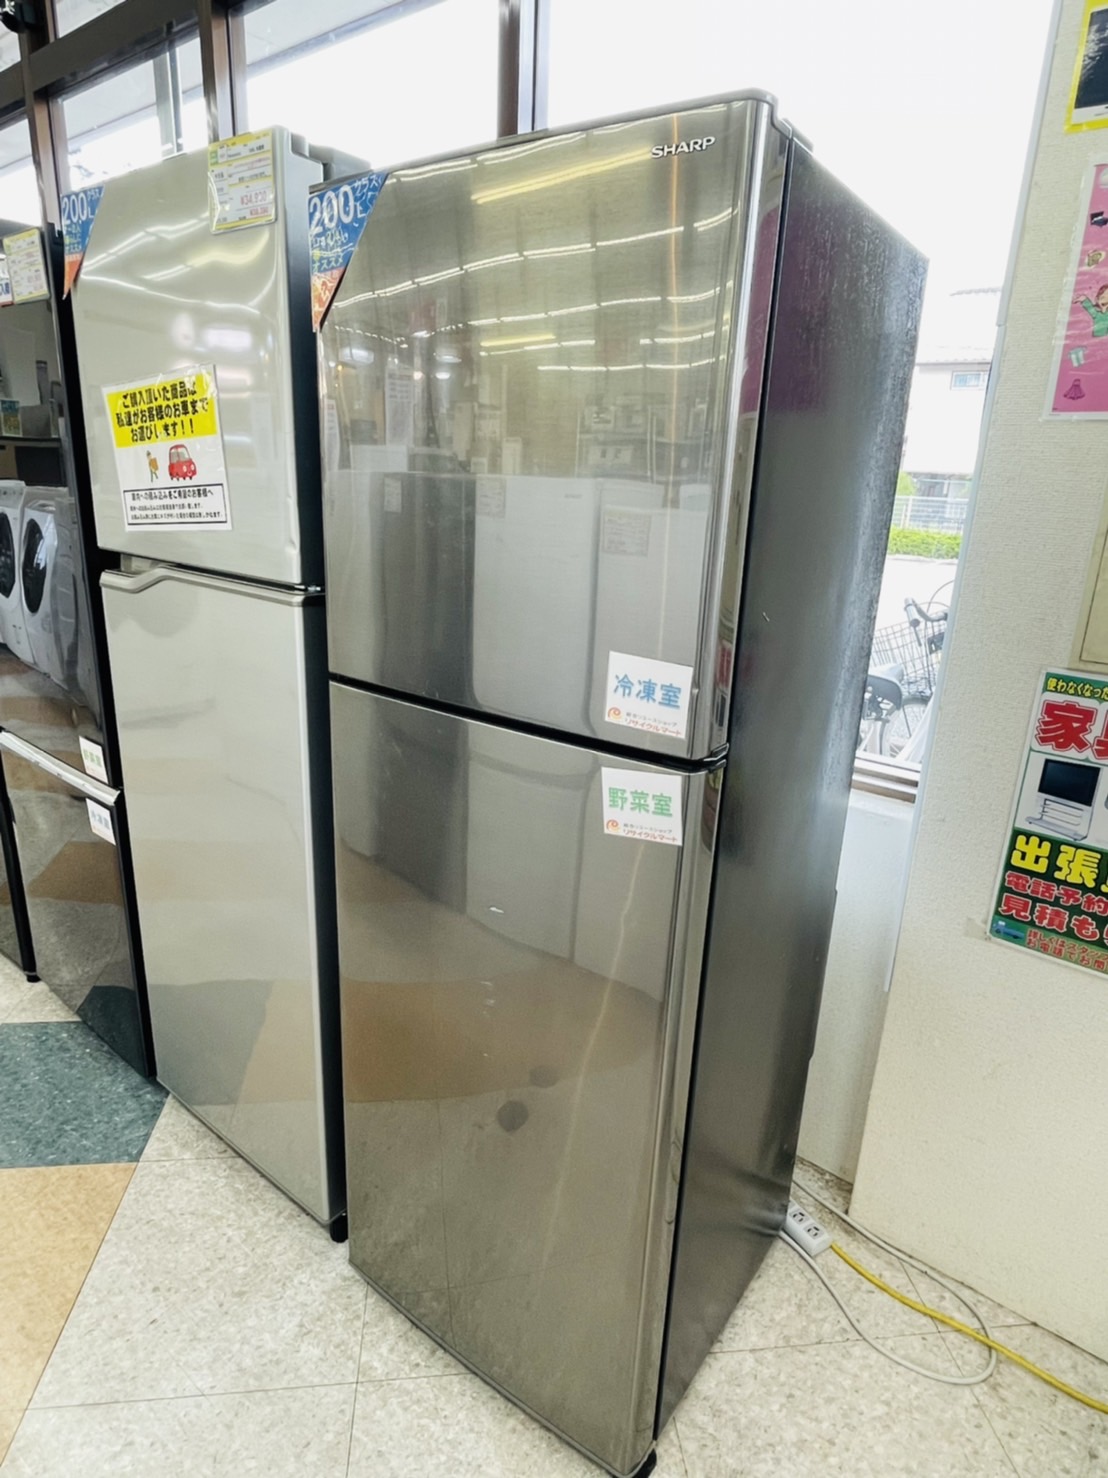 【SHARP(シャープ) / 225L冷蔵庫 / SJ-D23E-S / 2020年 / メタルカラー】買取させて頂きました!! - リサイクルマートは現在冷蔵庫の買取、家具の買取強化中です！お気軽にお問い合わせください。